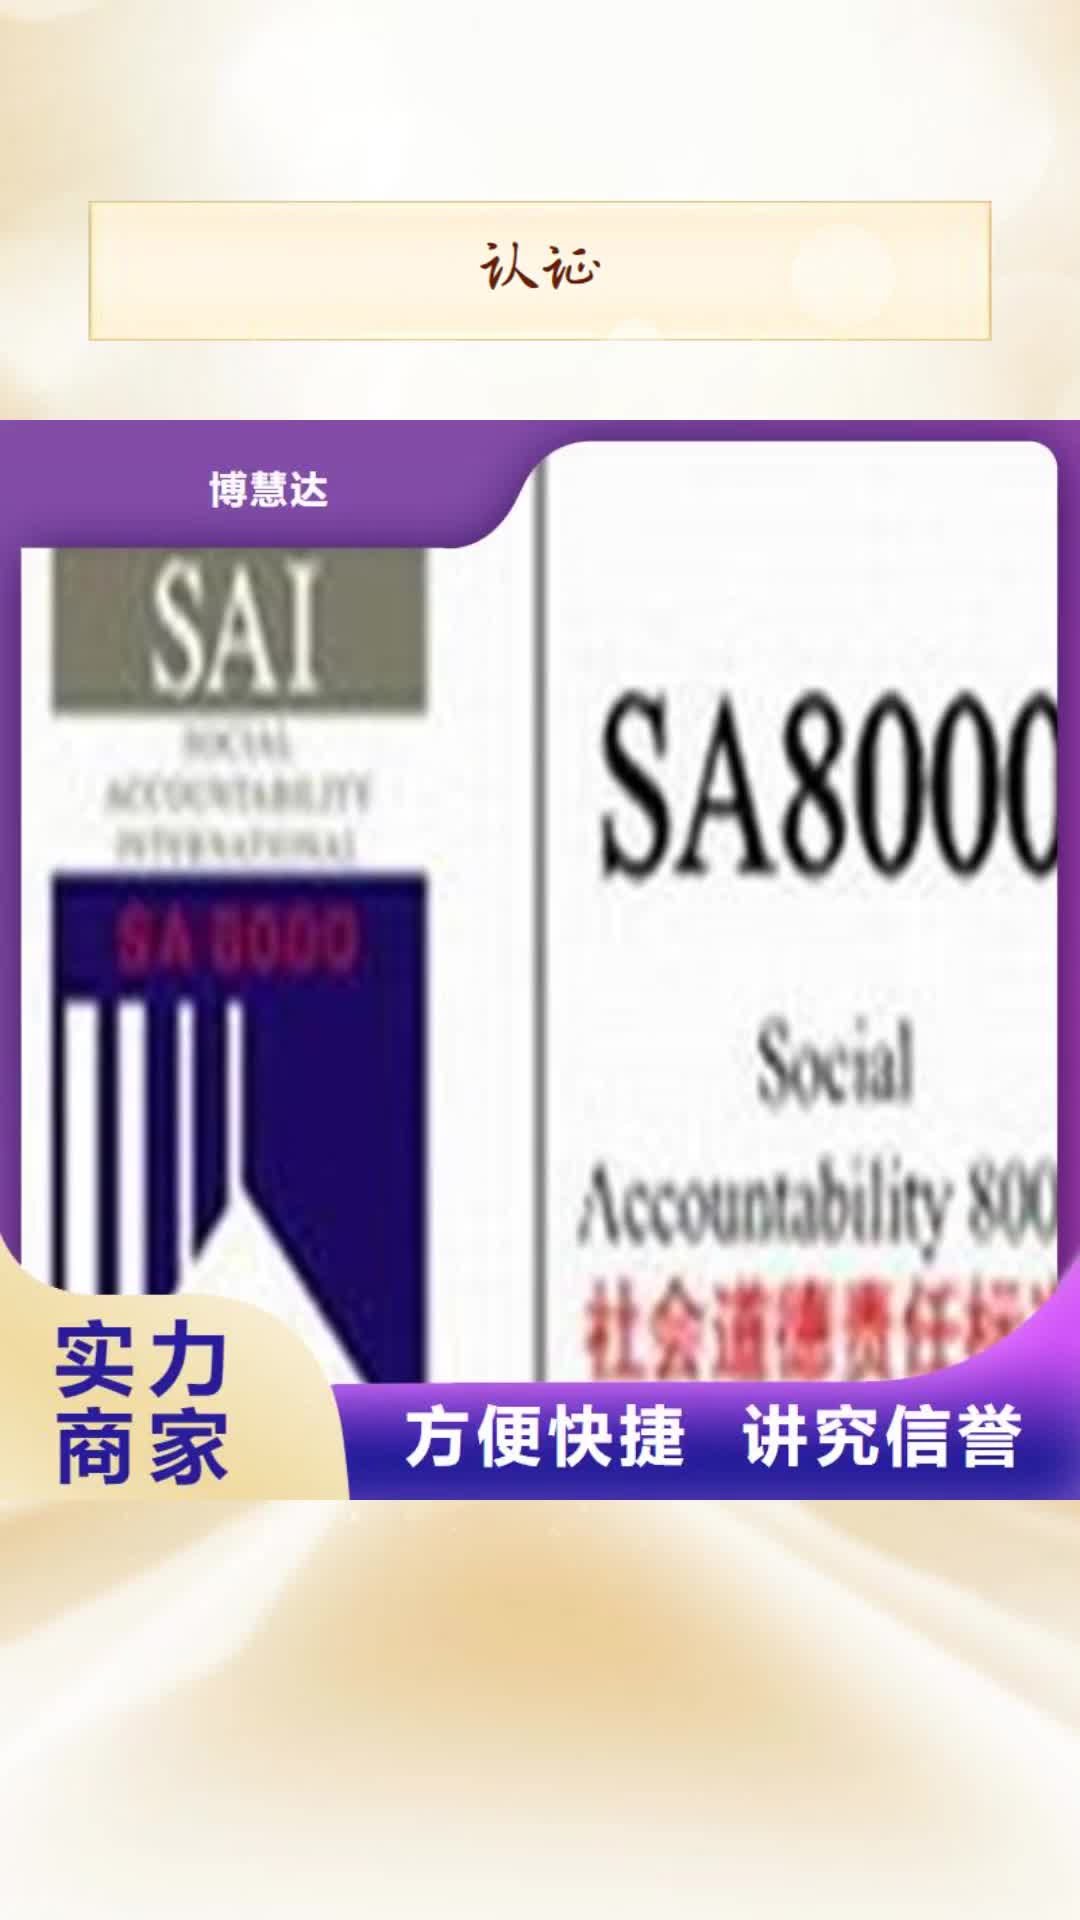 恩施【认证】_ISO9000认证承接